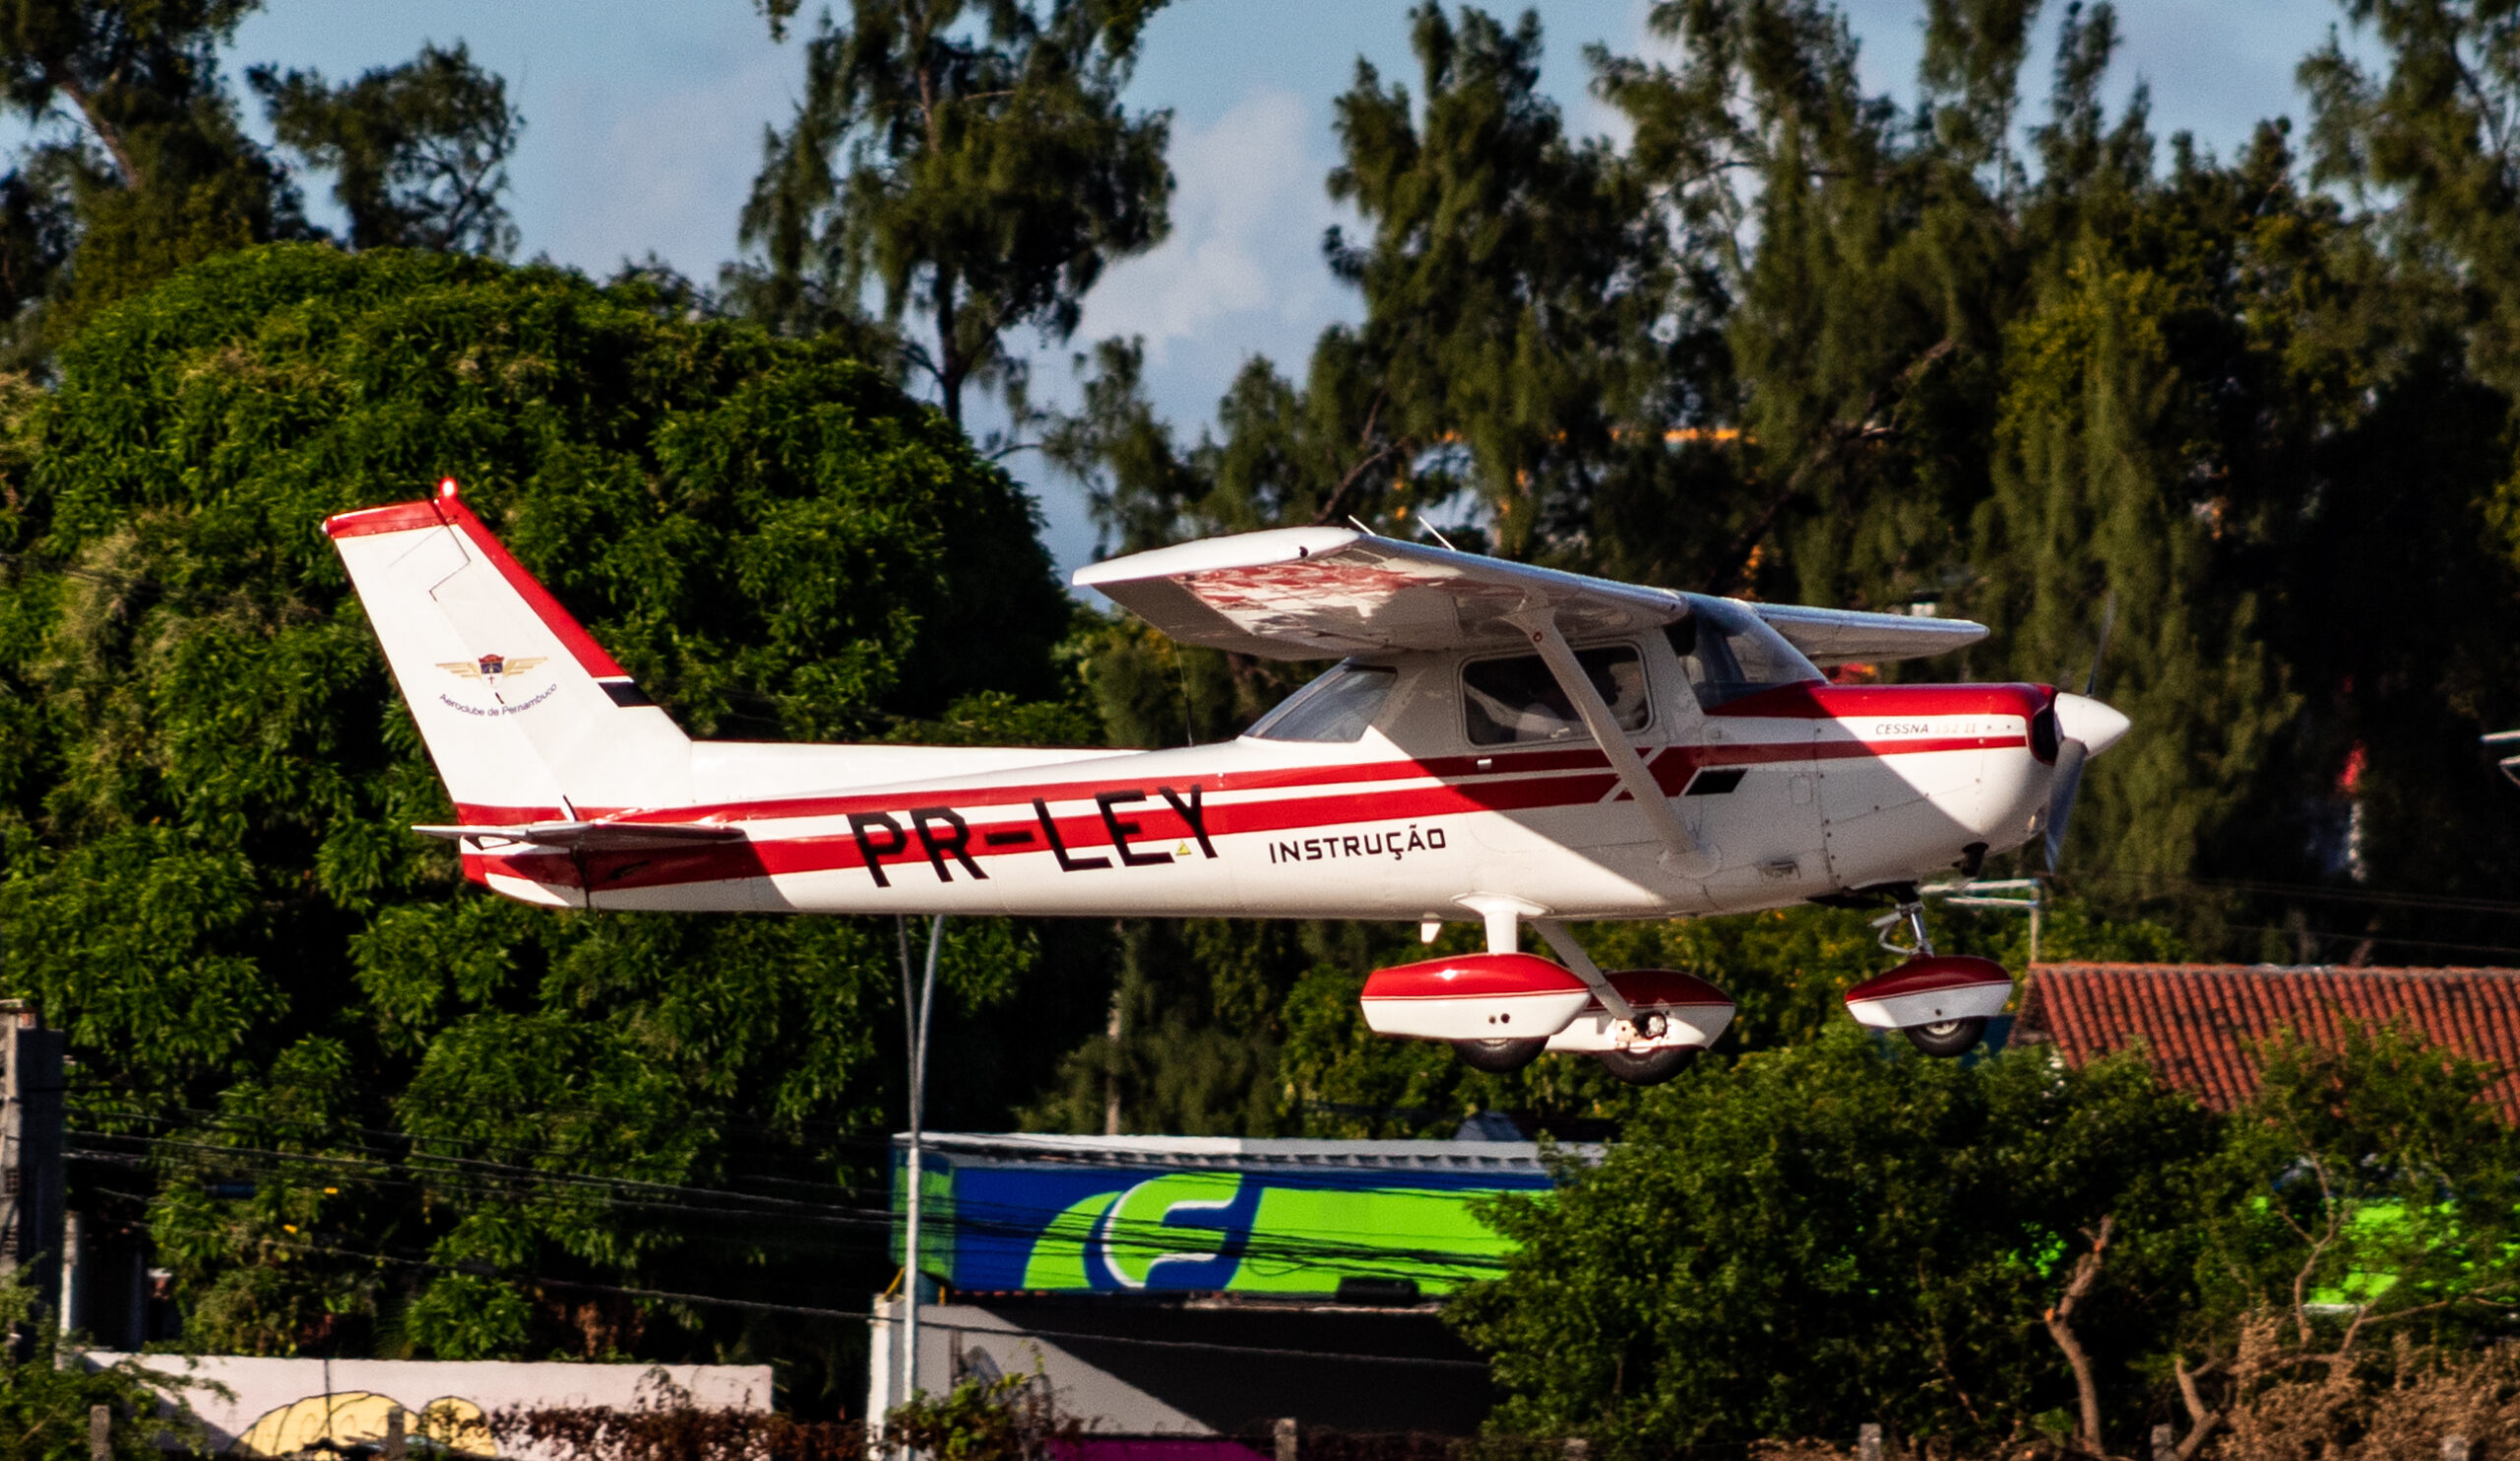 PR-LEY – Cessna C152 – Aeroclube de Pernambuco